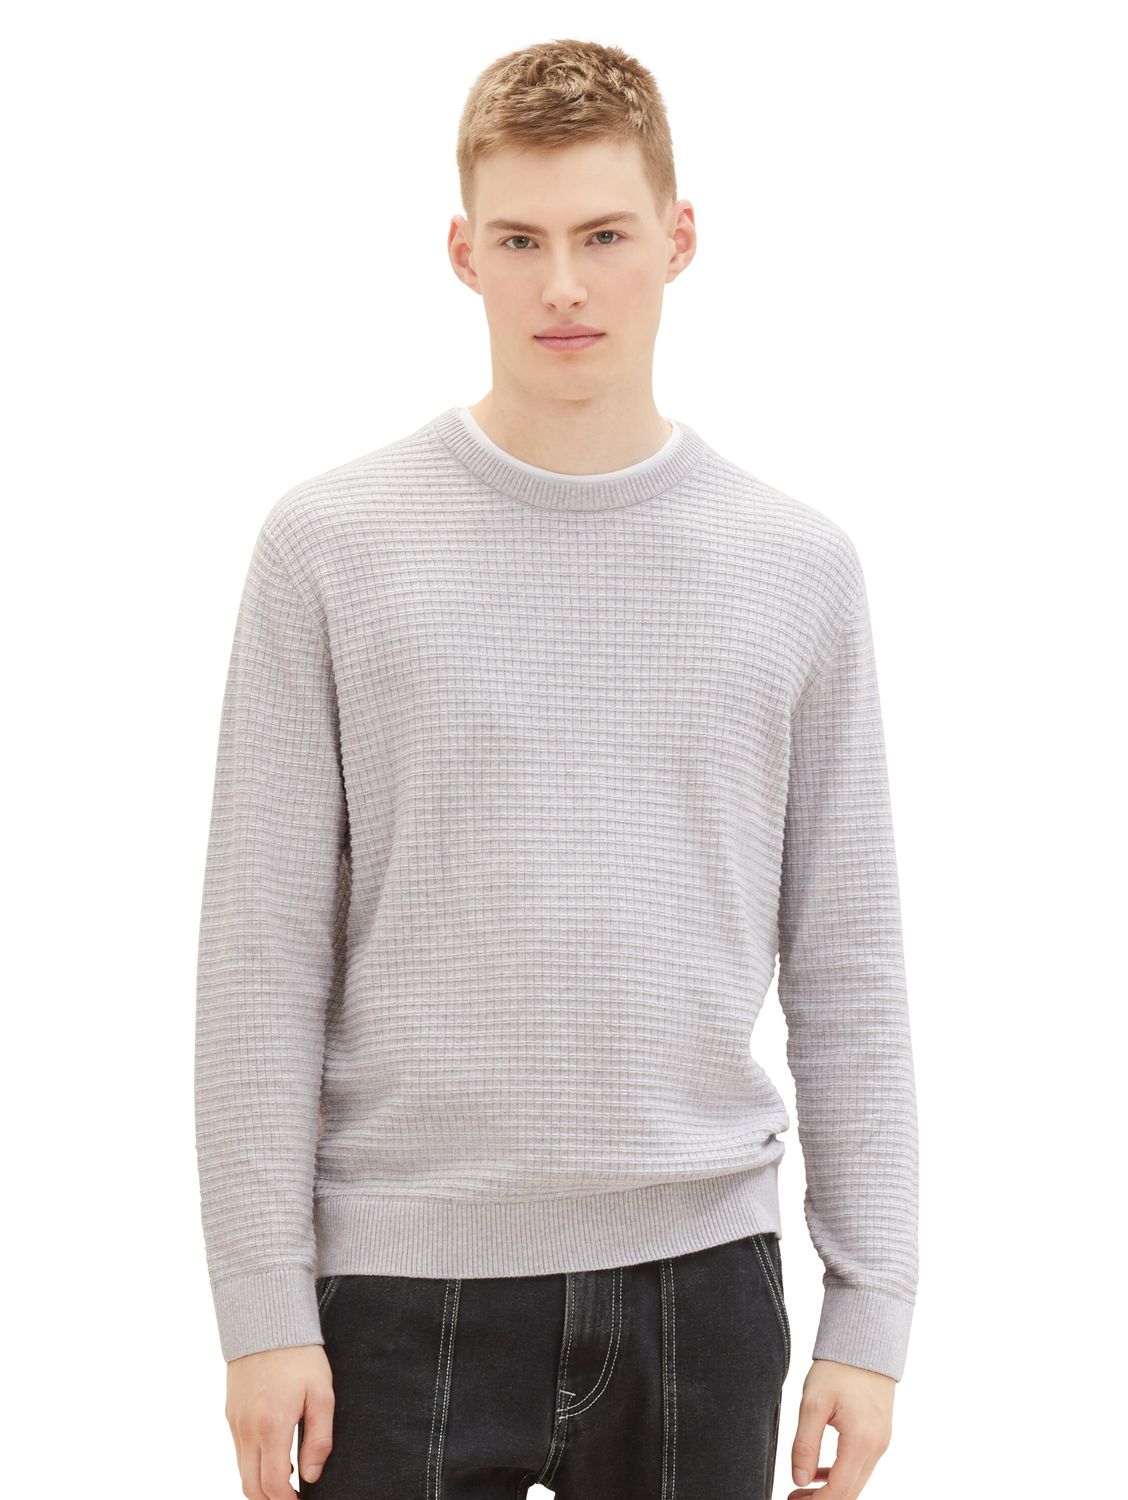 Пуловер TOM TAILOR Denim STRUCTURED DOUBLELAYER, серый пуловер tom tailor denim structured basic серый